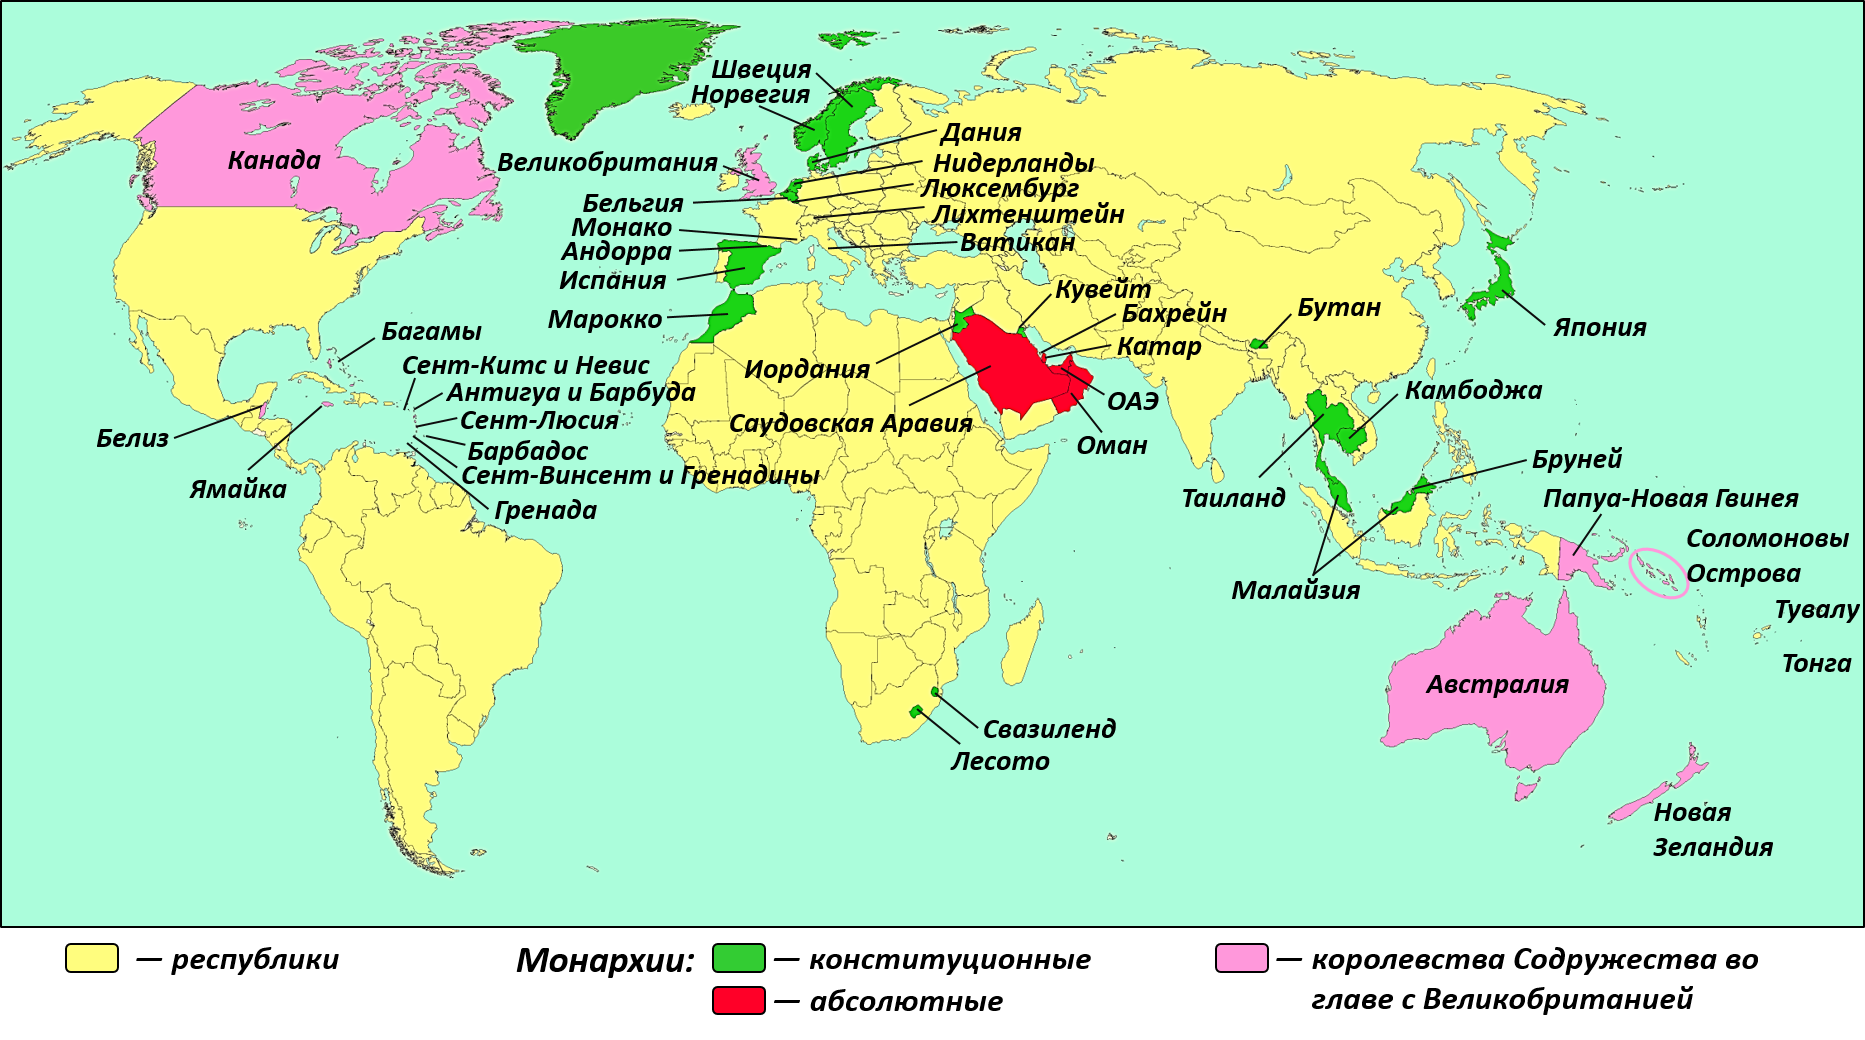 Страны с конституционной монархией на карте. Государства с республиканской формой правления Европы на карте. Все страны имеют государственные